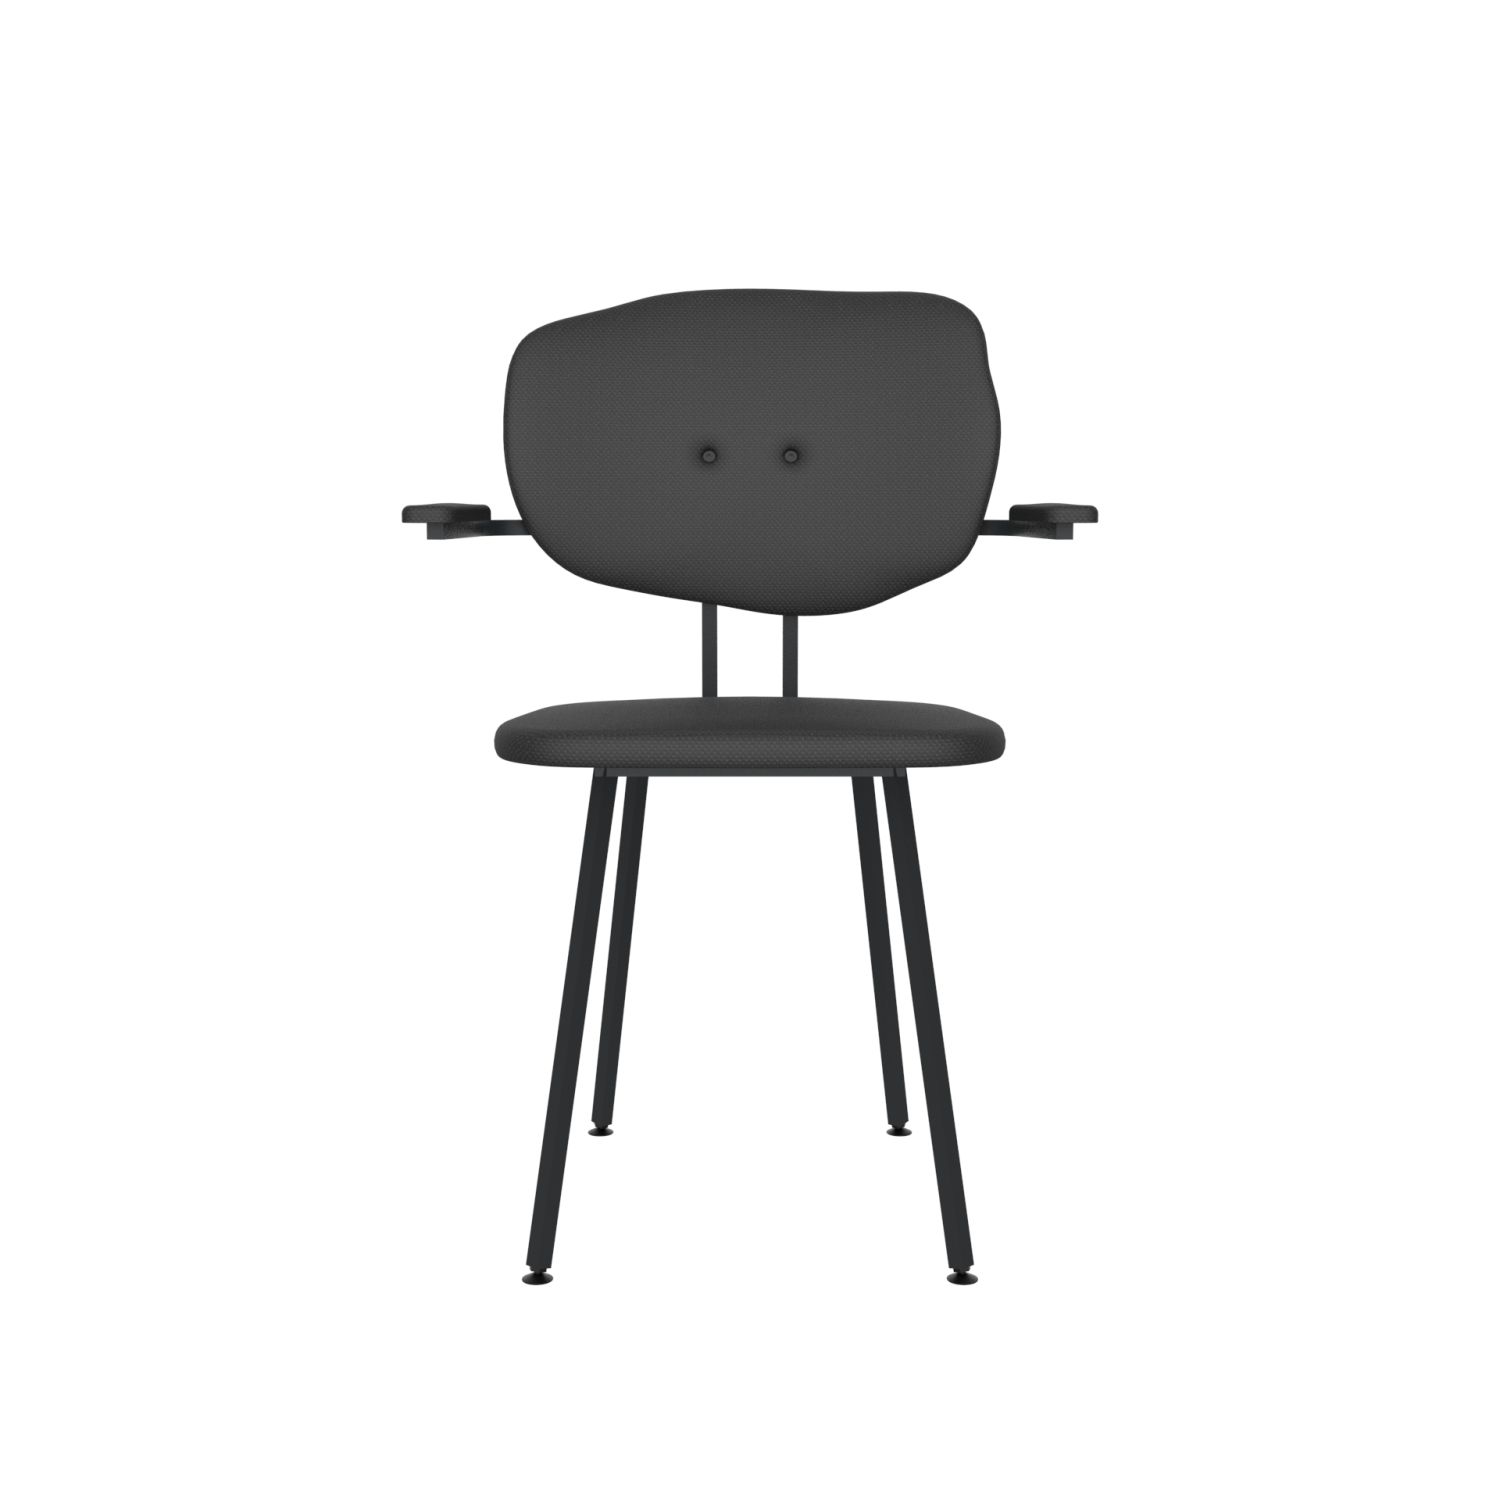 lensvelt maarten baas chair 102 not stackable with armrests backrest f havana black 090 black ral9005 hard leg ends